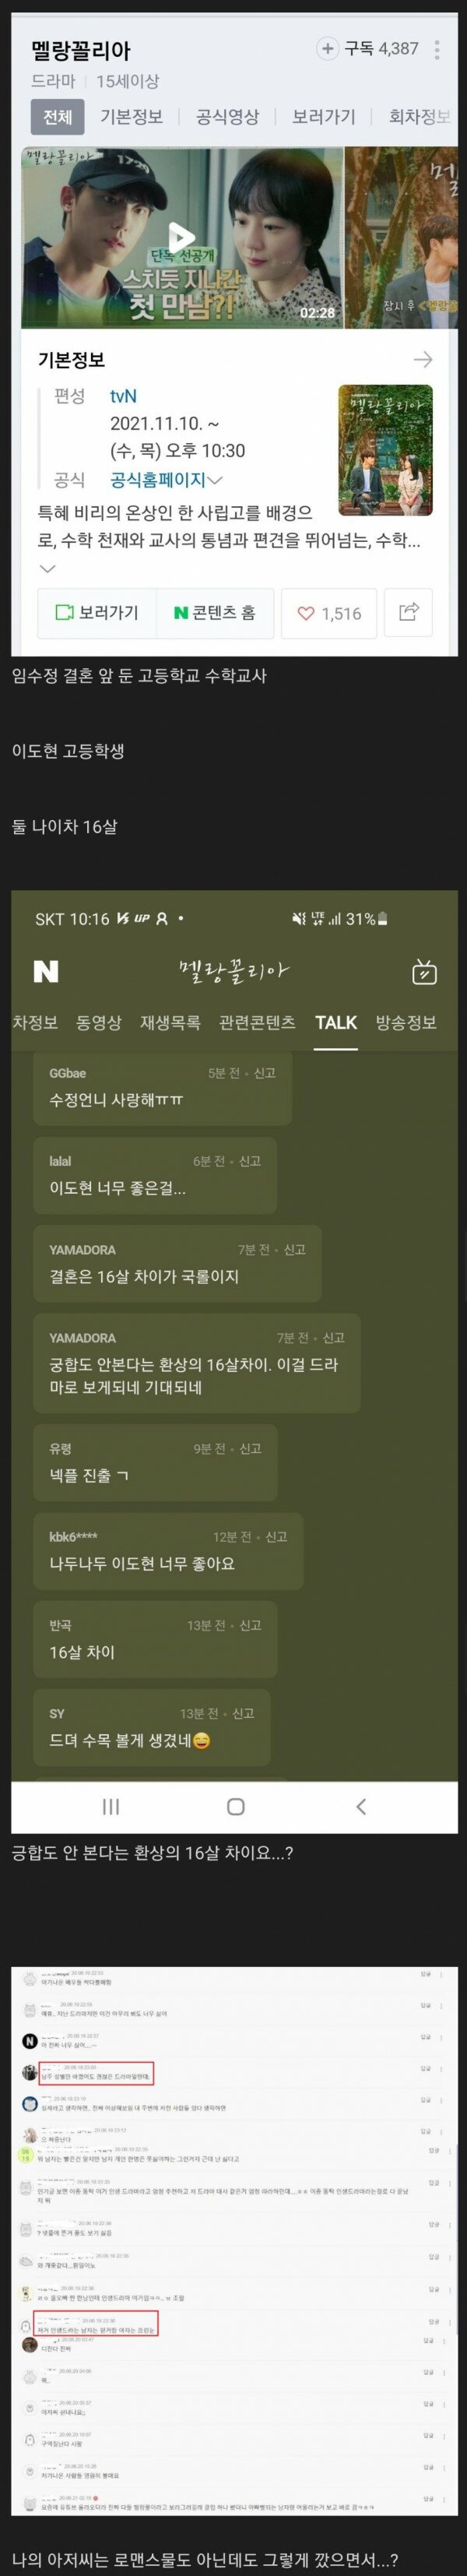 또 다시 논란인 드라마 커플 나이차 세계관